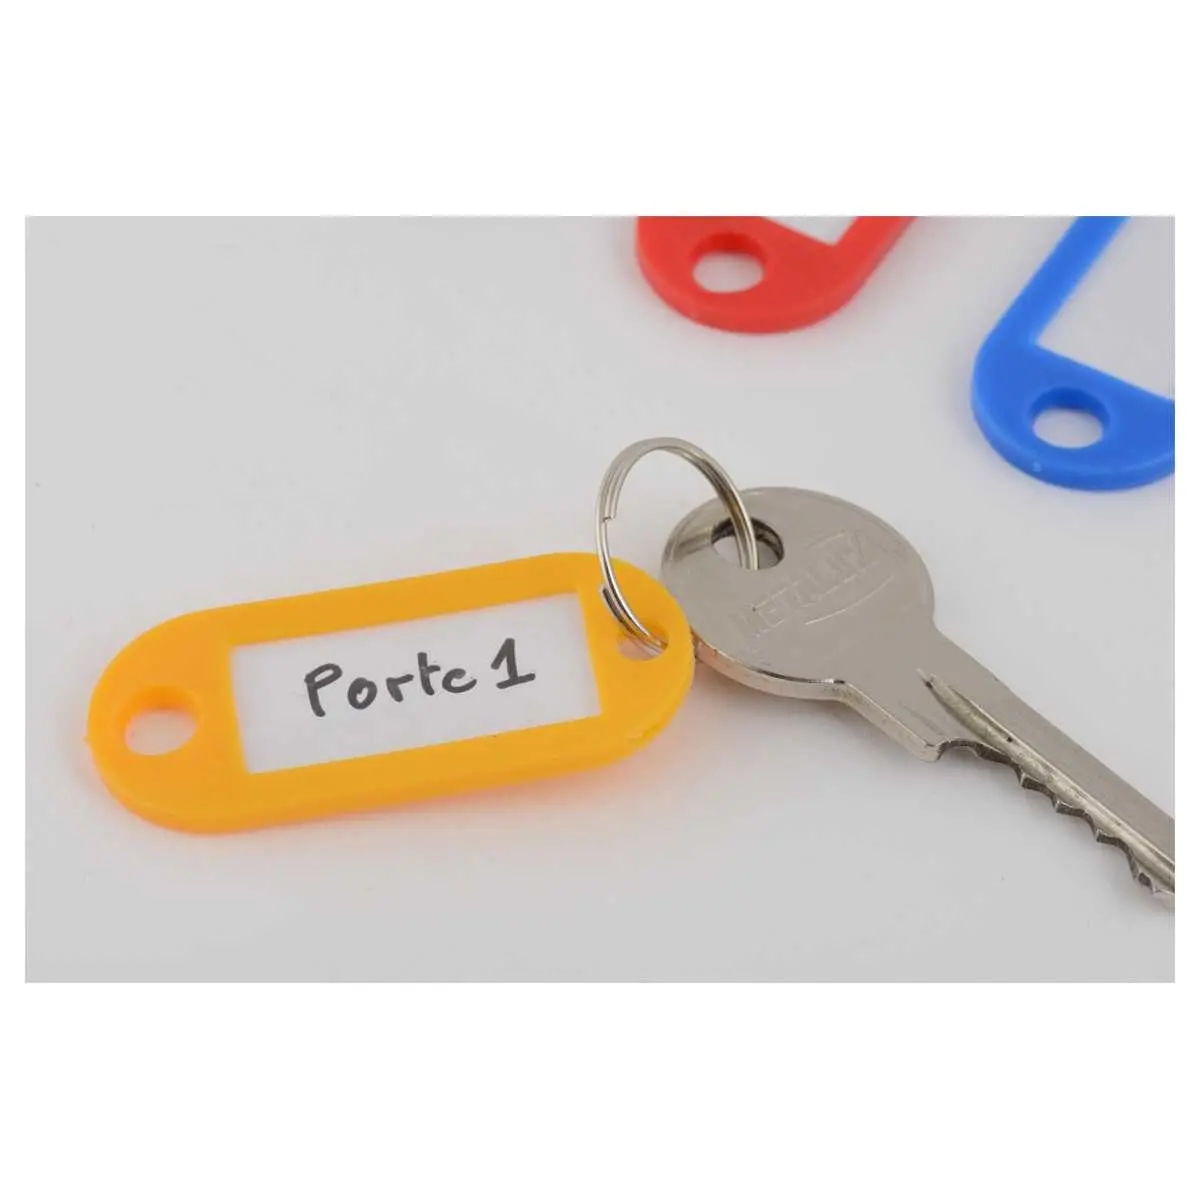 Porte-clés avec étiquette Montreuil - A partir de 0,90 €